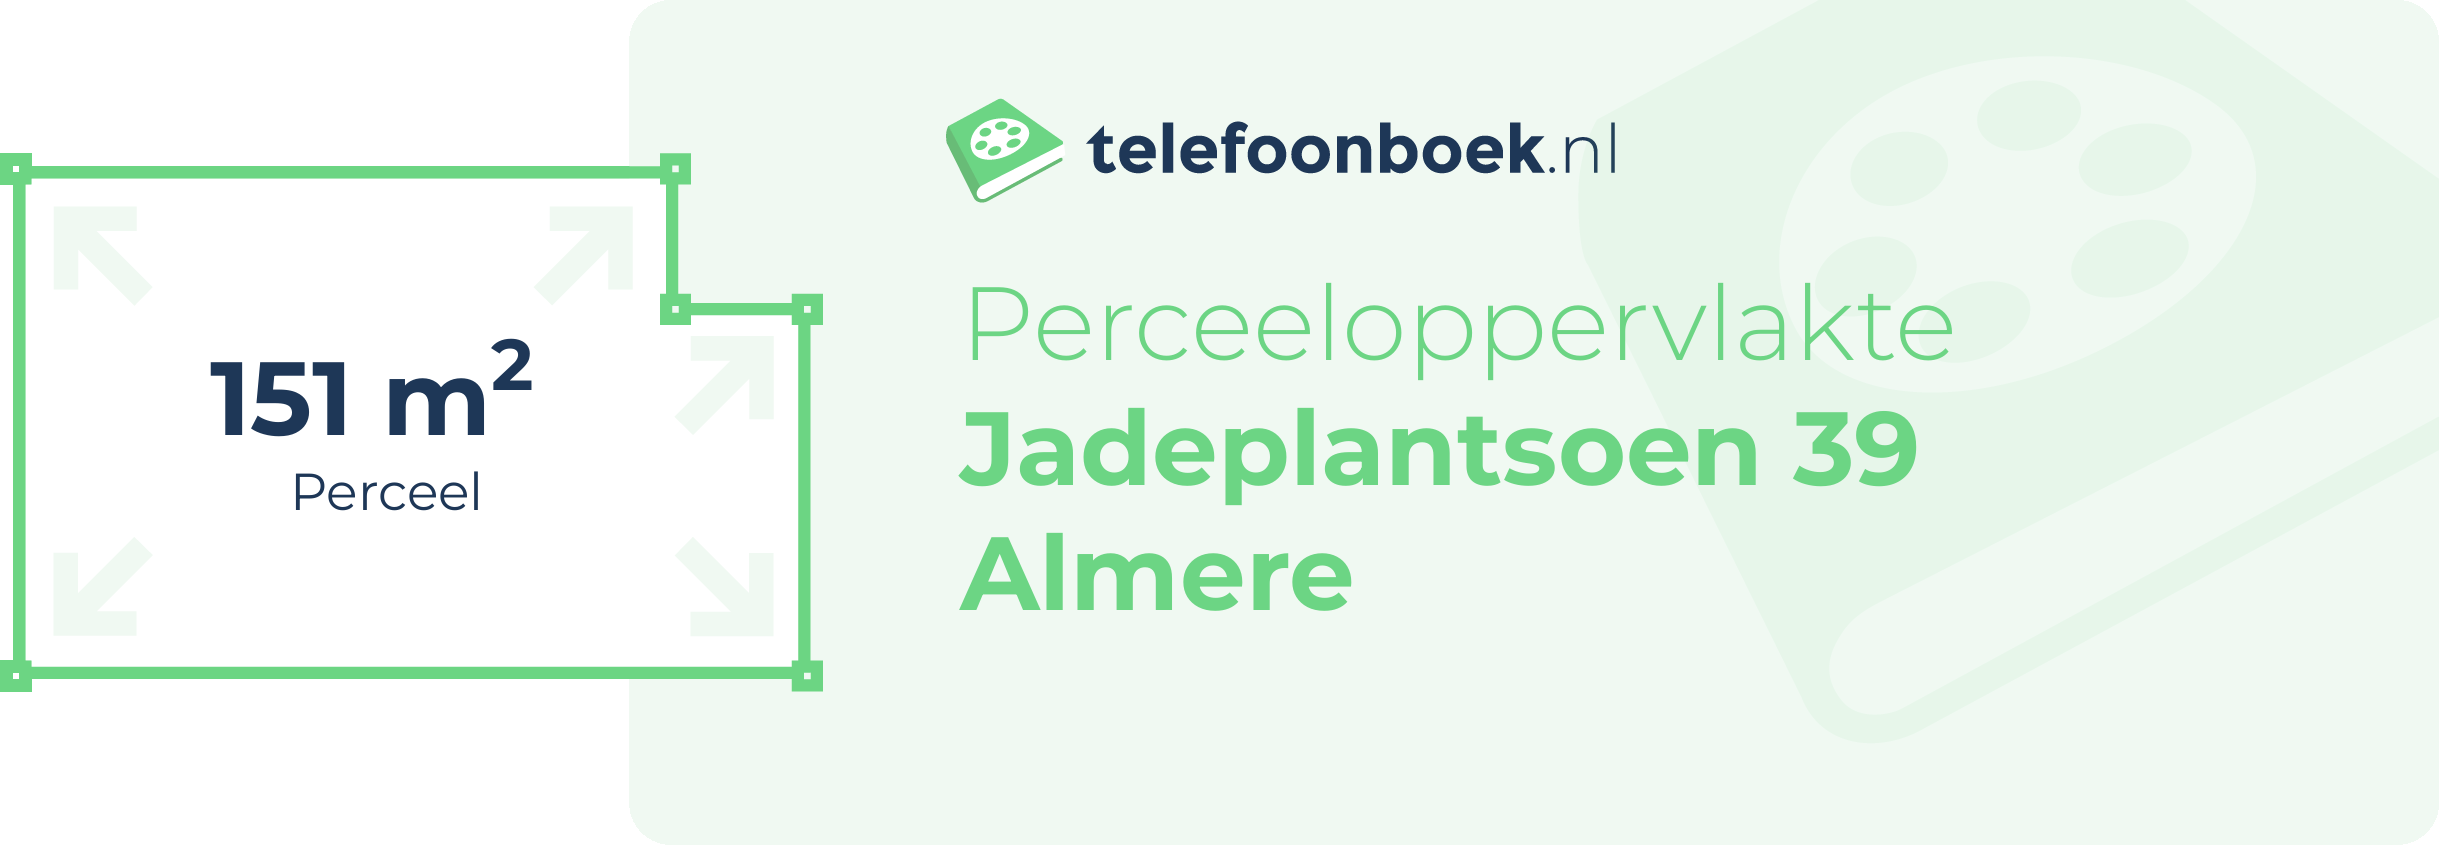 Perceeloppervlakte Jadeplantsoen 39 Almere